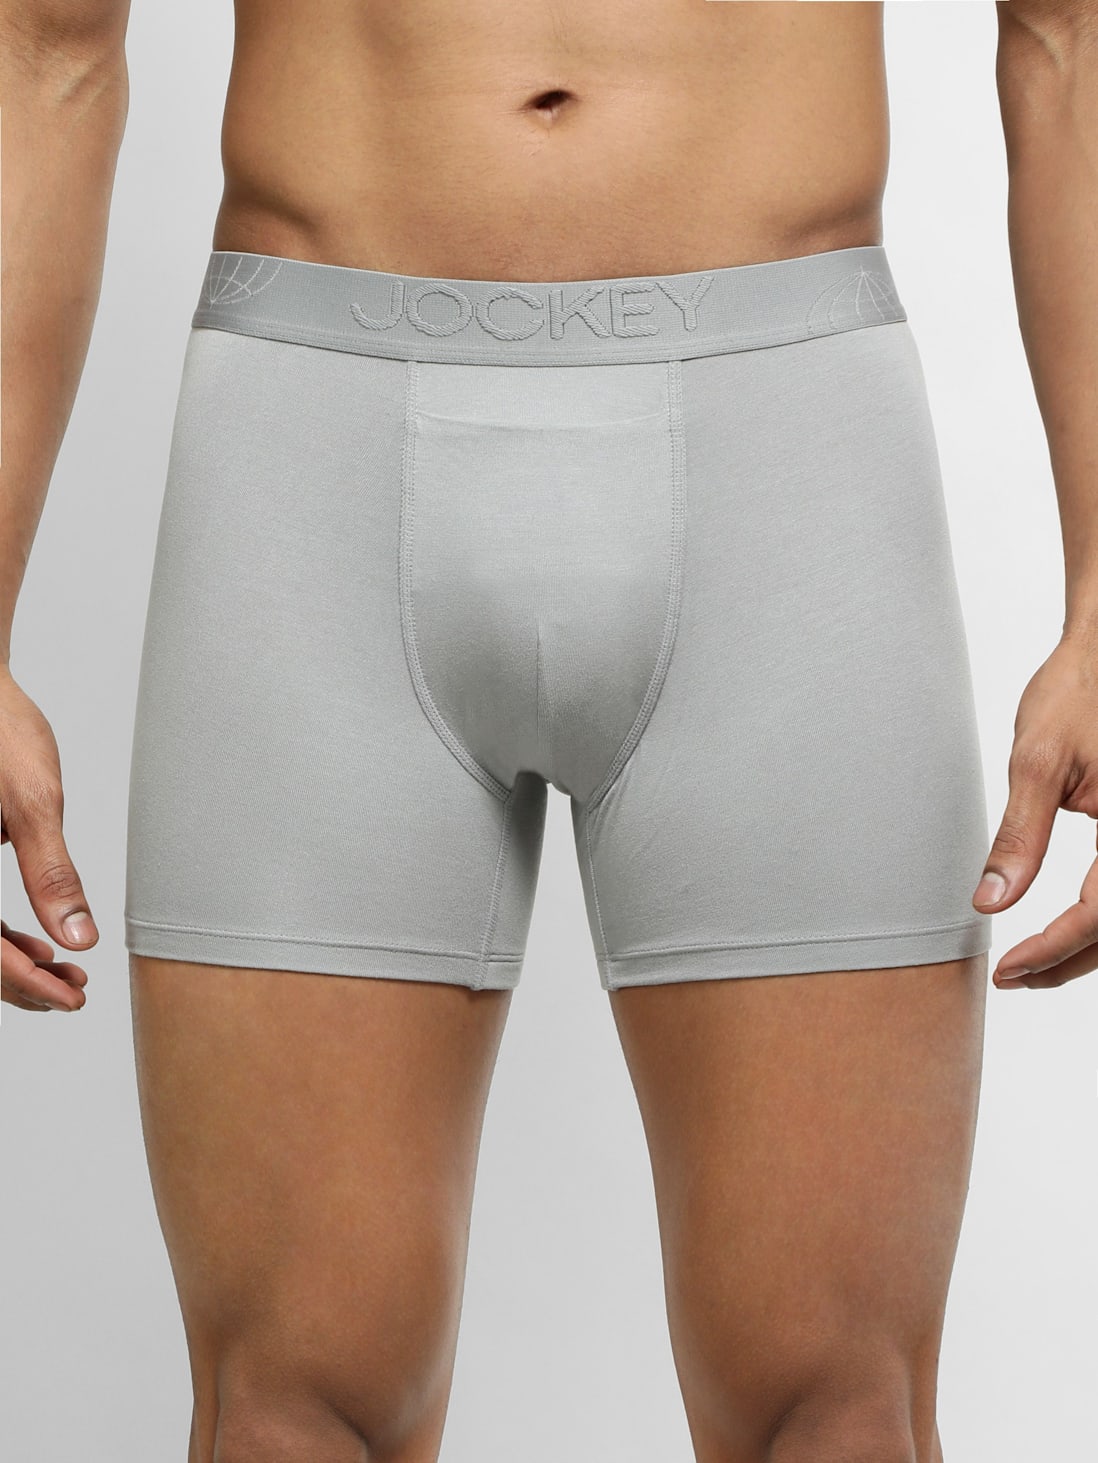 Men's Briefs, Grey, Tencel Micro Modal Underwear